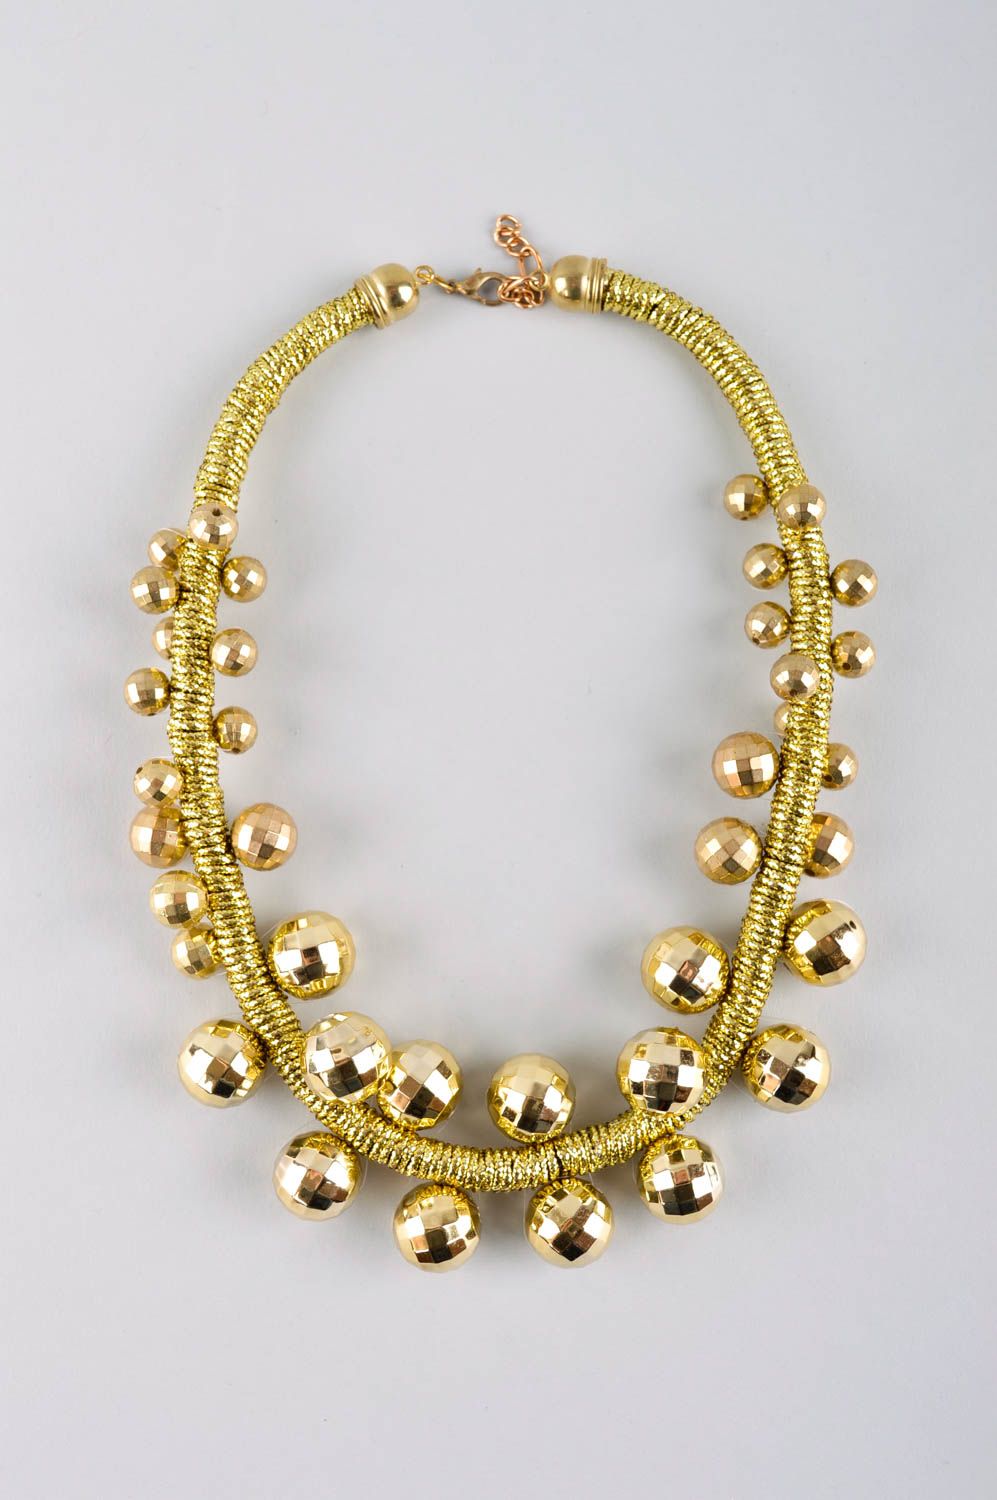 Handmade stylish elegant necklace elegant beaded necklace textile jewelry photo 2